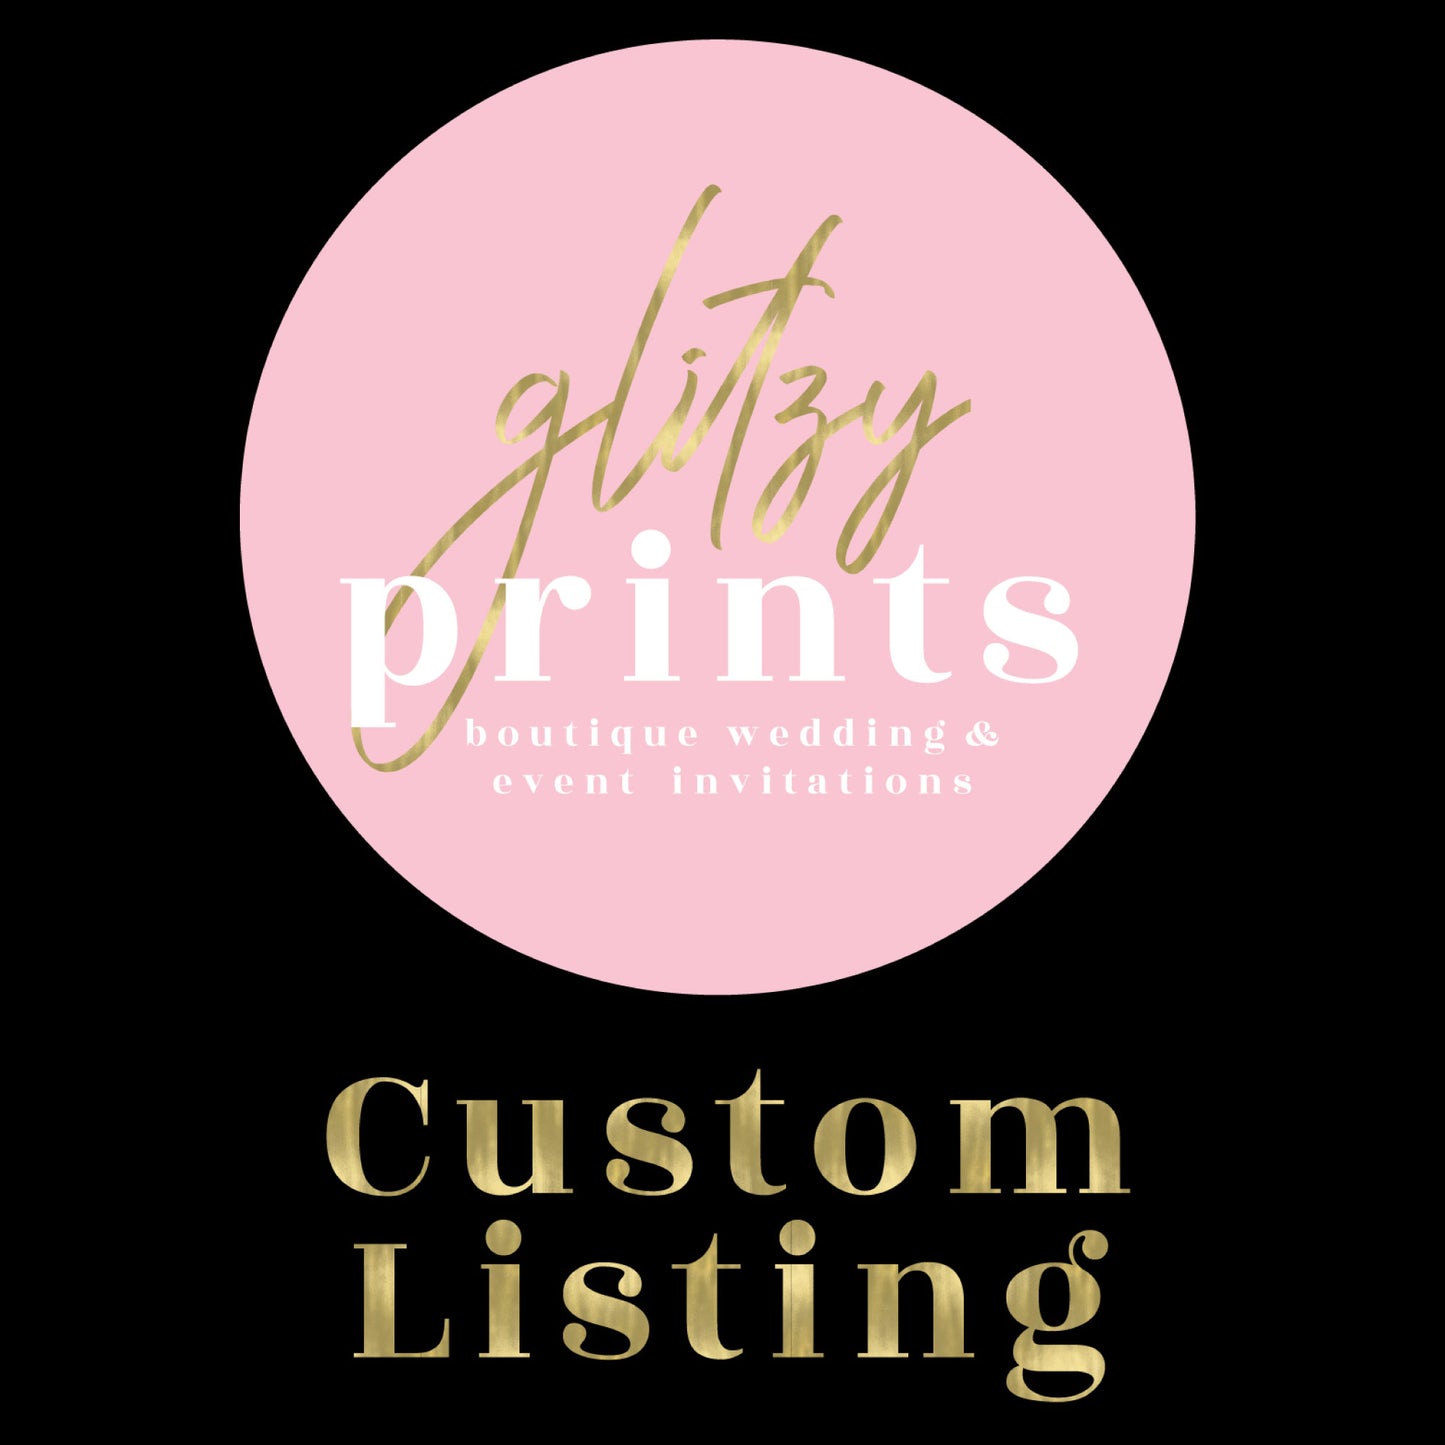 Custom Listing for Jessica